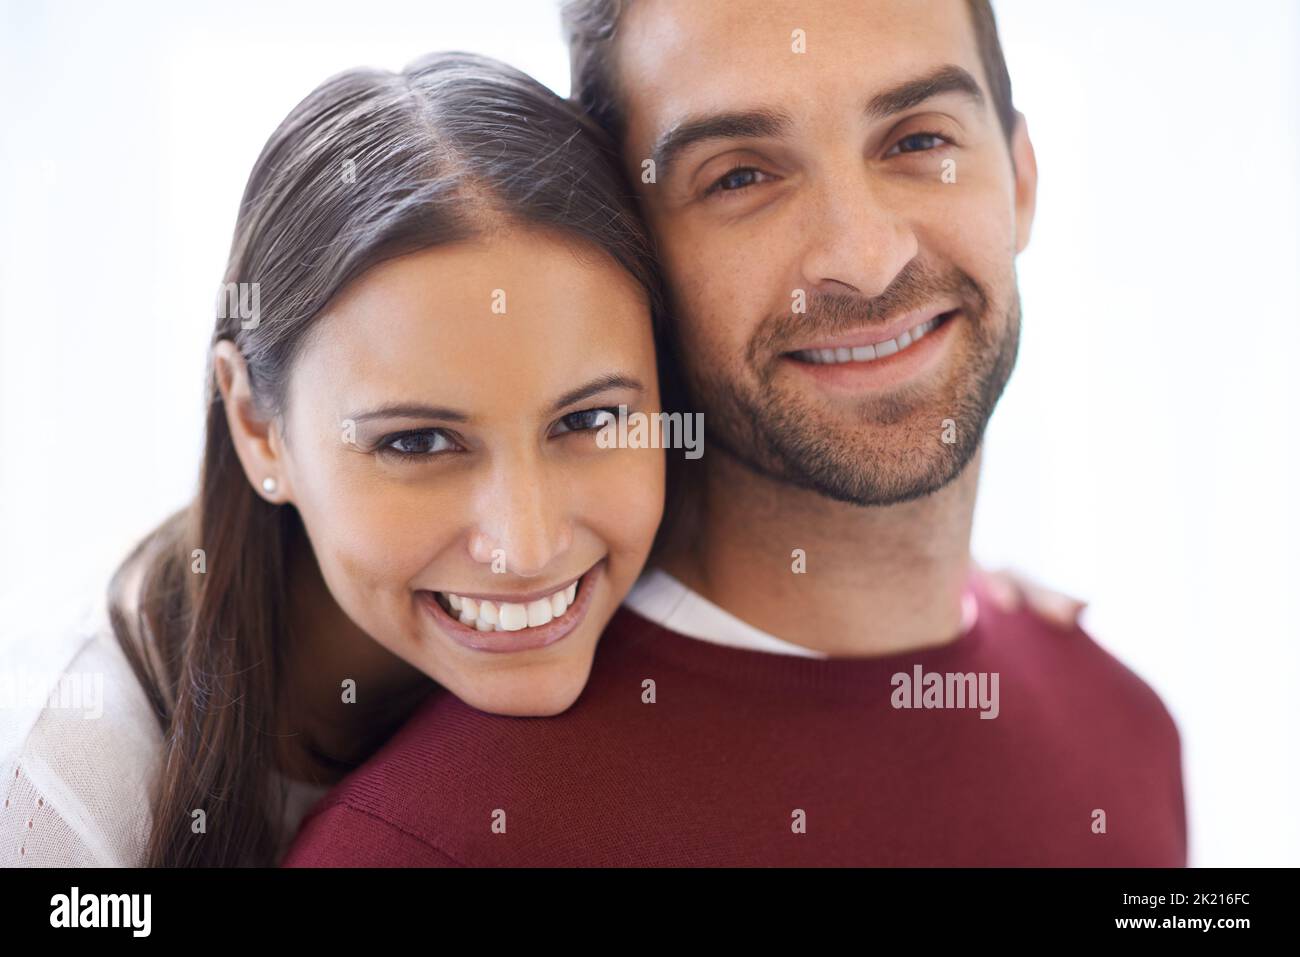 Meine Liebe zum Leben. Ein junges Paar mit Zuneigung, das viel Zeit miteinander verbringt. Stockfoto